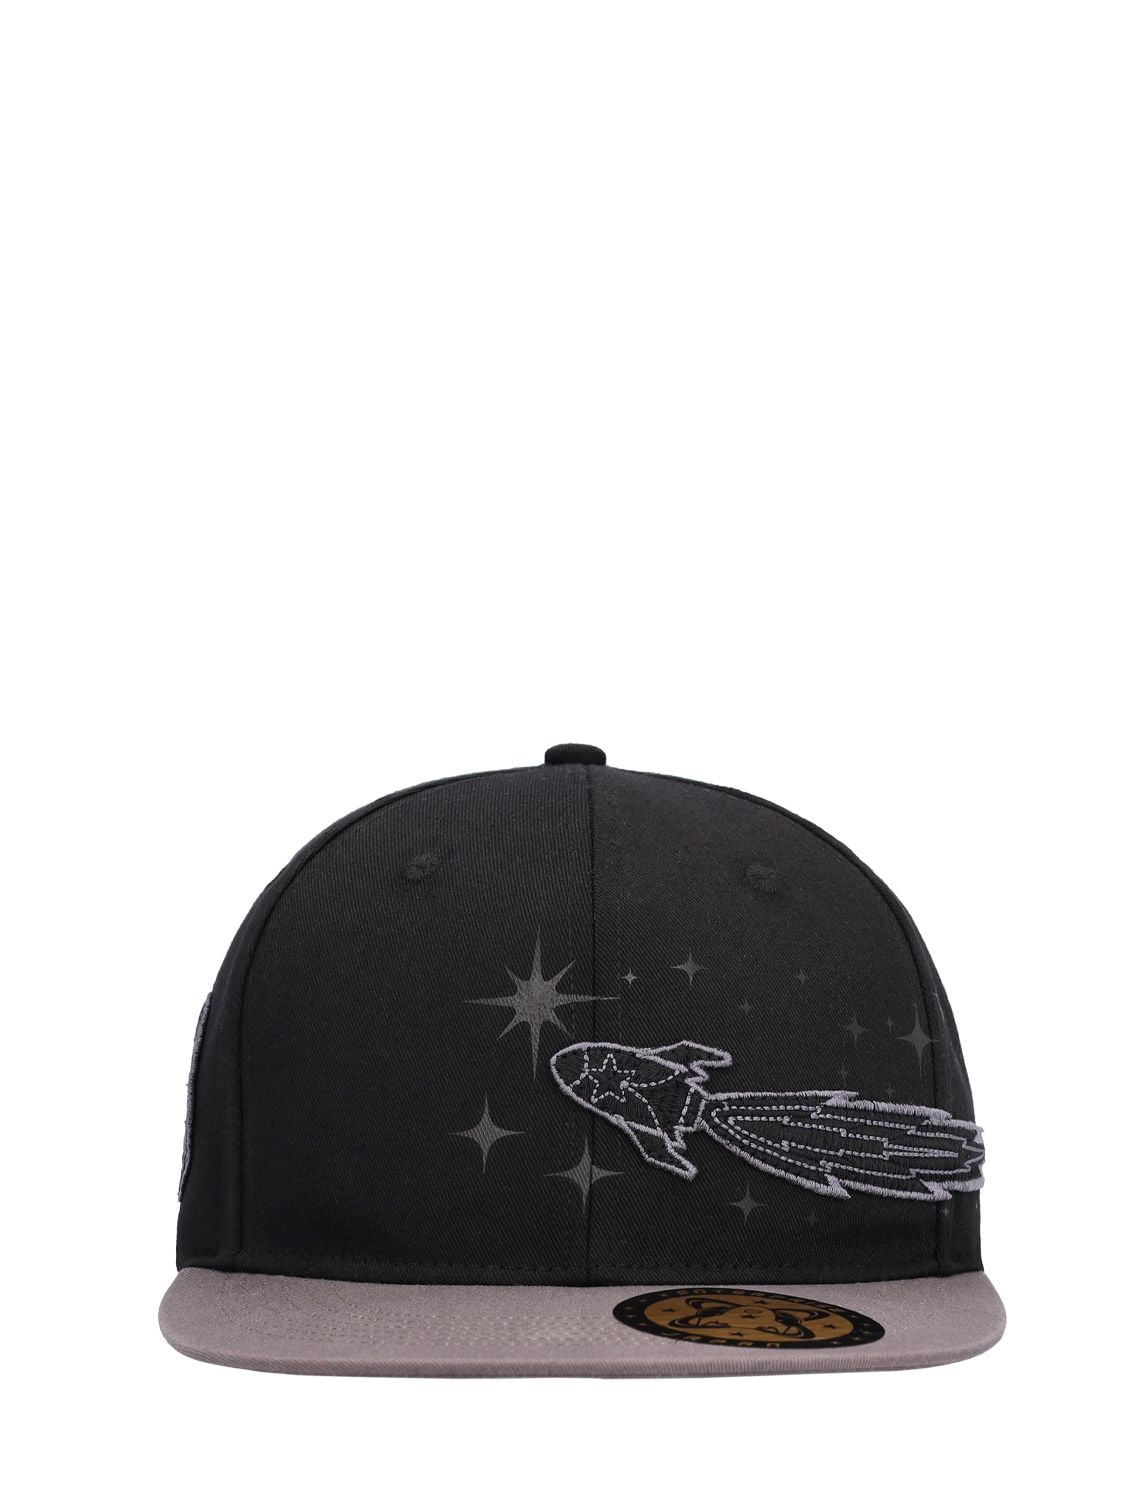 Enterprise Japan Logo Embroidered Canvas Baseball Hat In Black